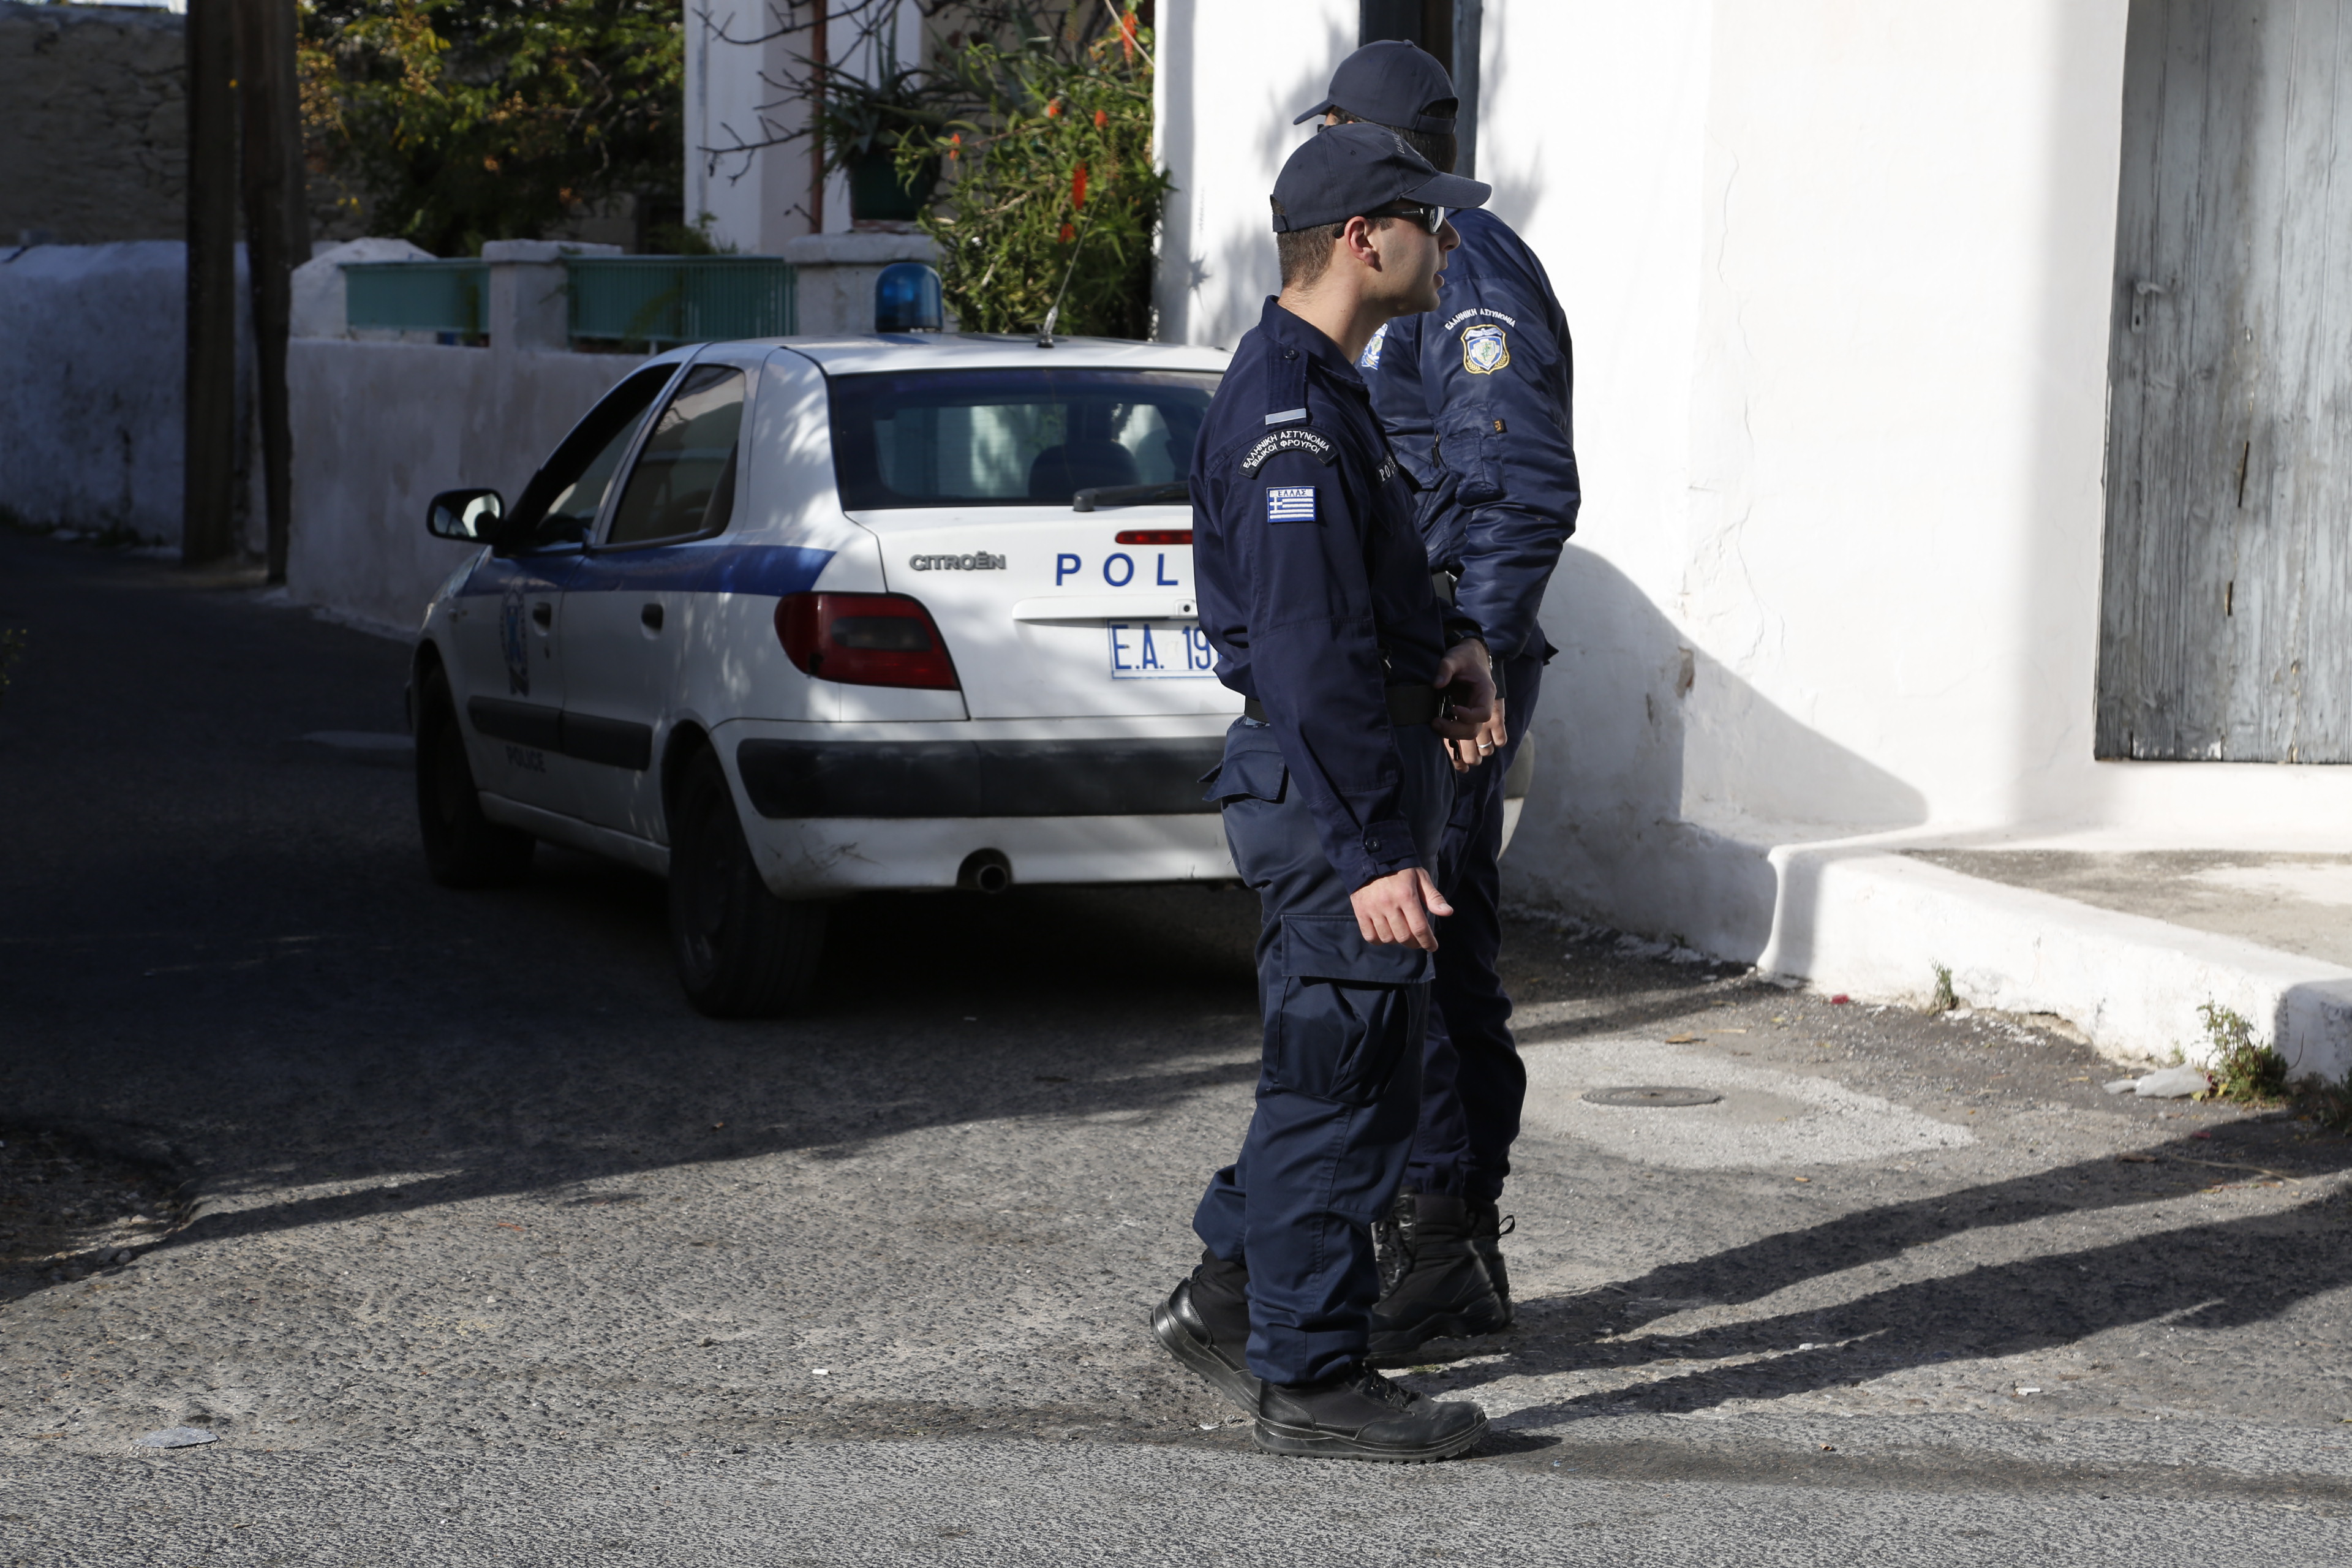 Ρομά – αστυνομικοί: Τα “πήραν” με έλεγχο, πέταξαν πέτρες και καρέκλες στα “όργανα”